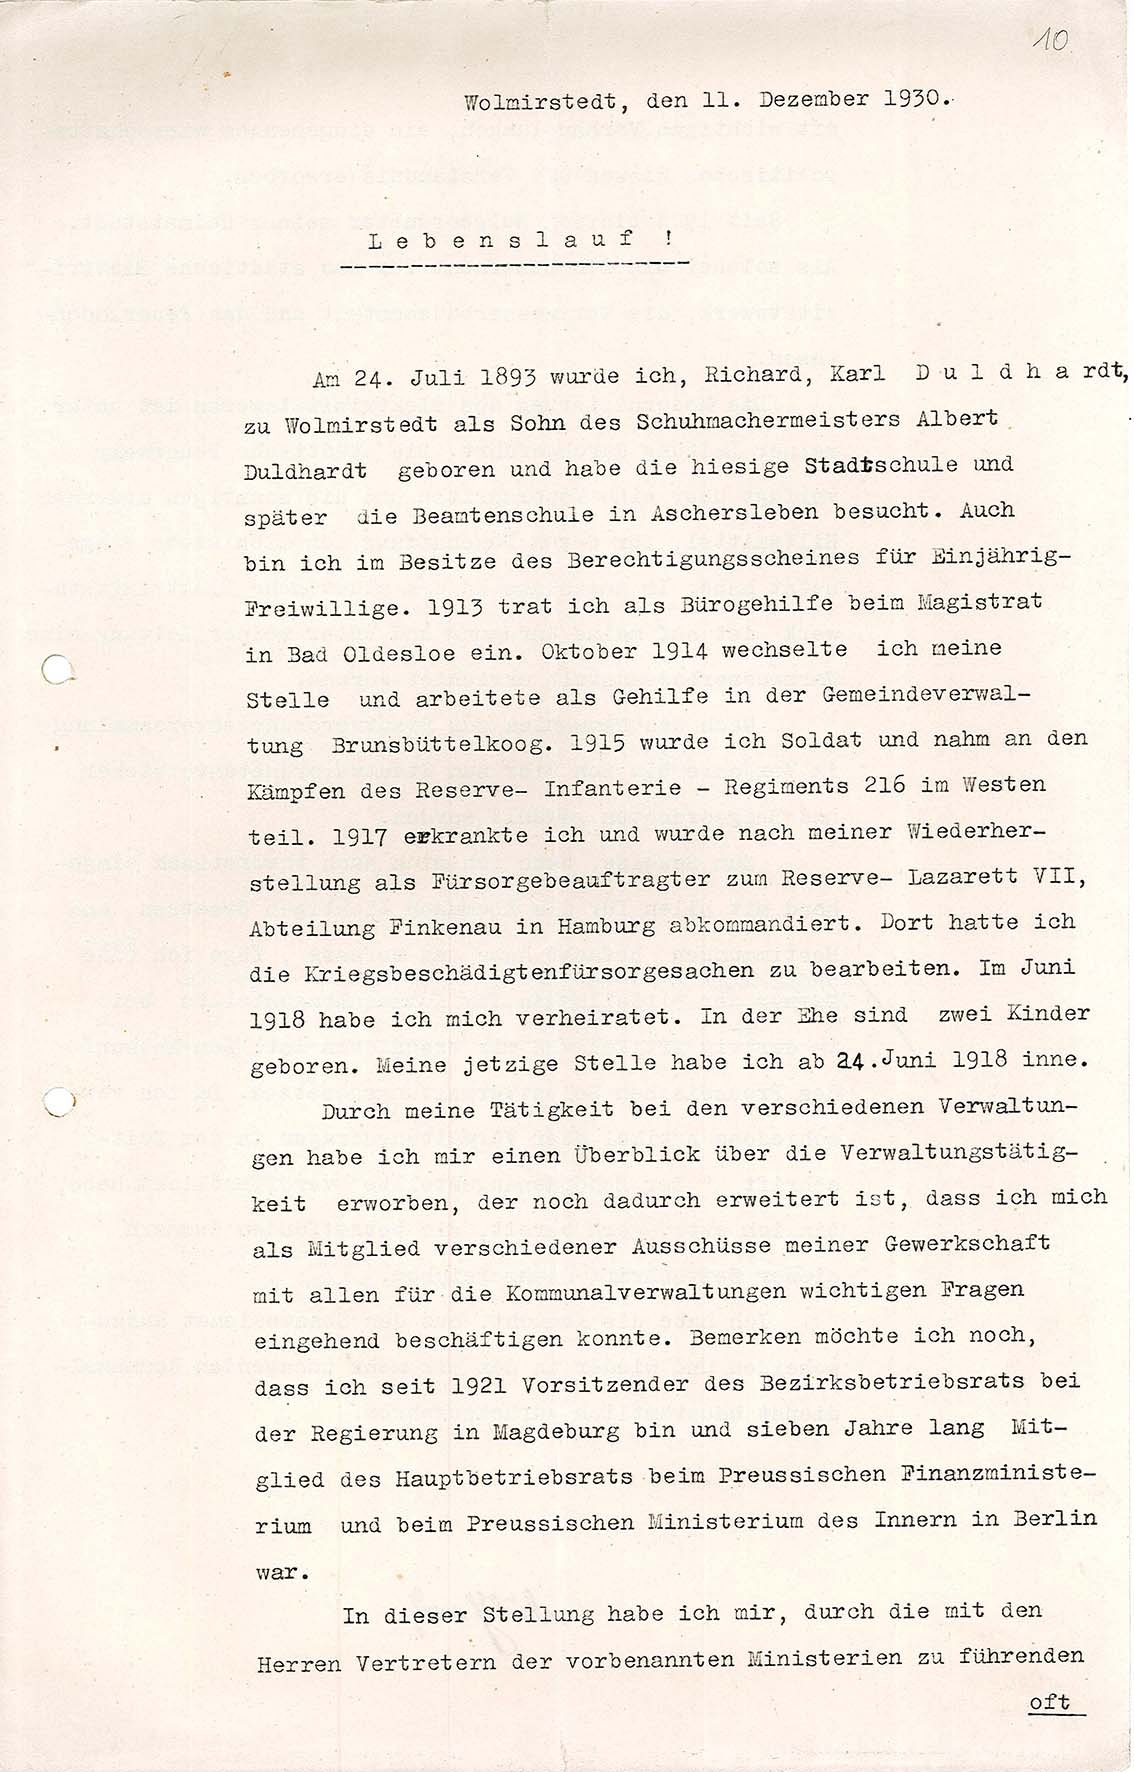 Lebenslauf von Karl Duldhardt, 11. Dezember 1930 (Museum Wolmirstedt RR-F)